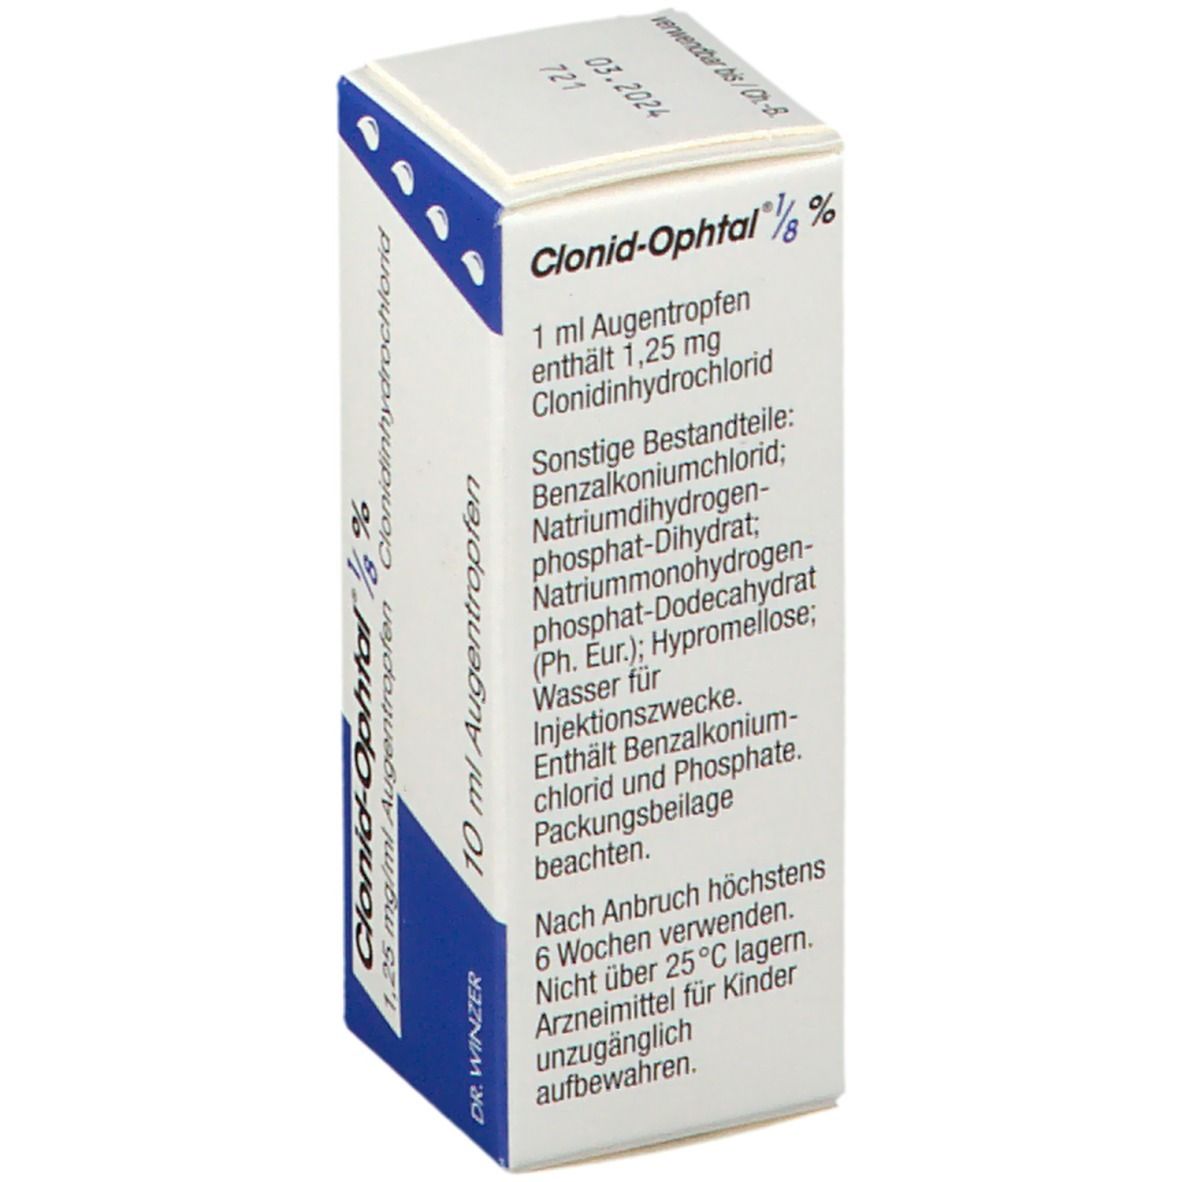 Clonid-Ophtal® 1/8 %